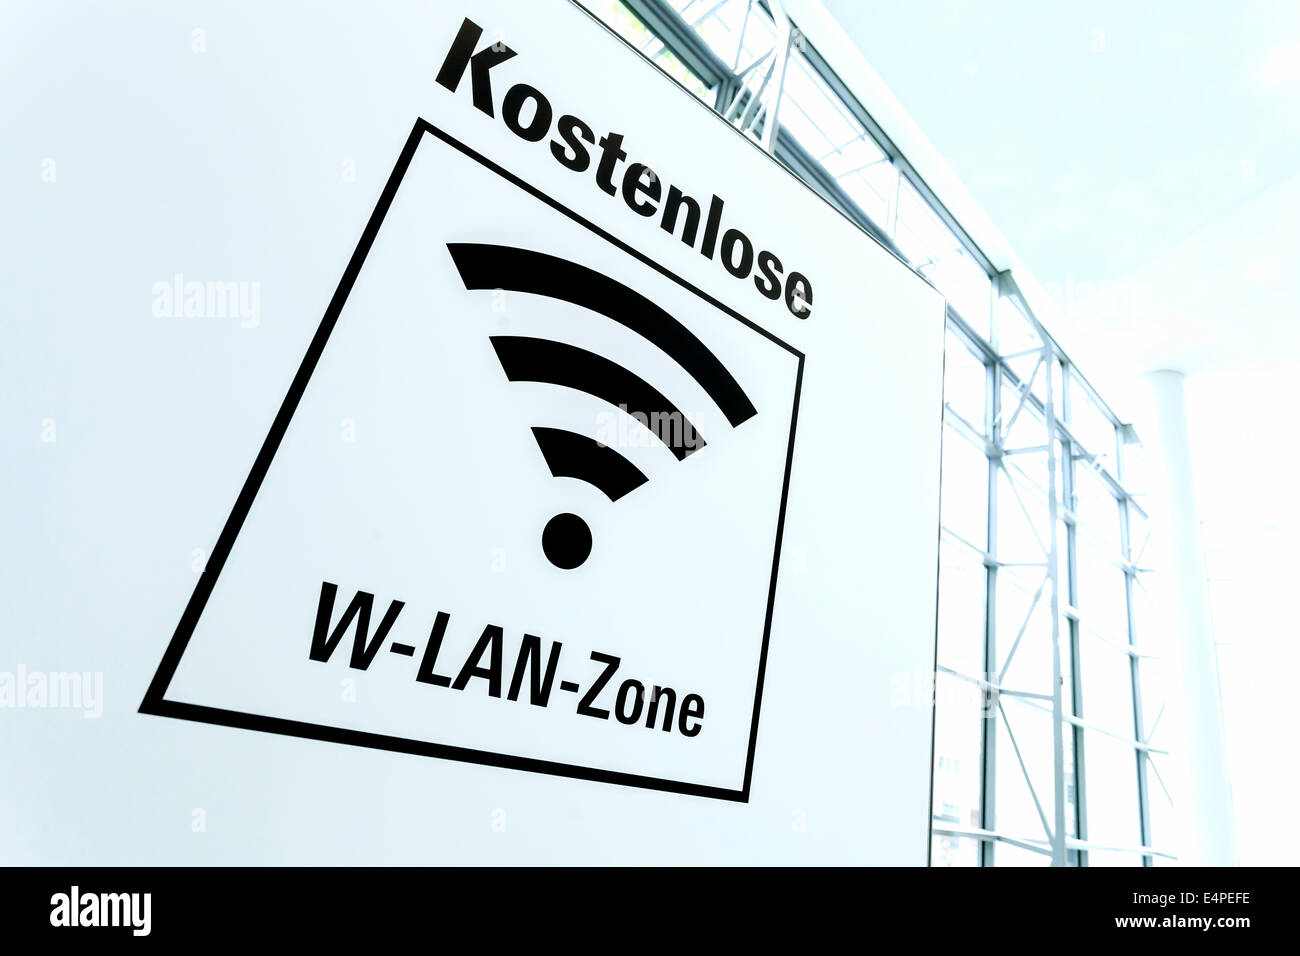 Anmelden, gratis Wi-Fi Zone, Deutschland Stockfoto